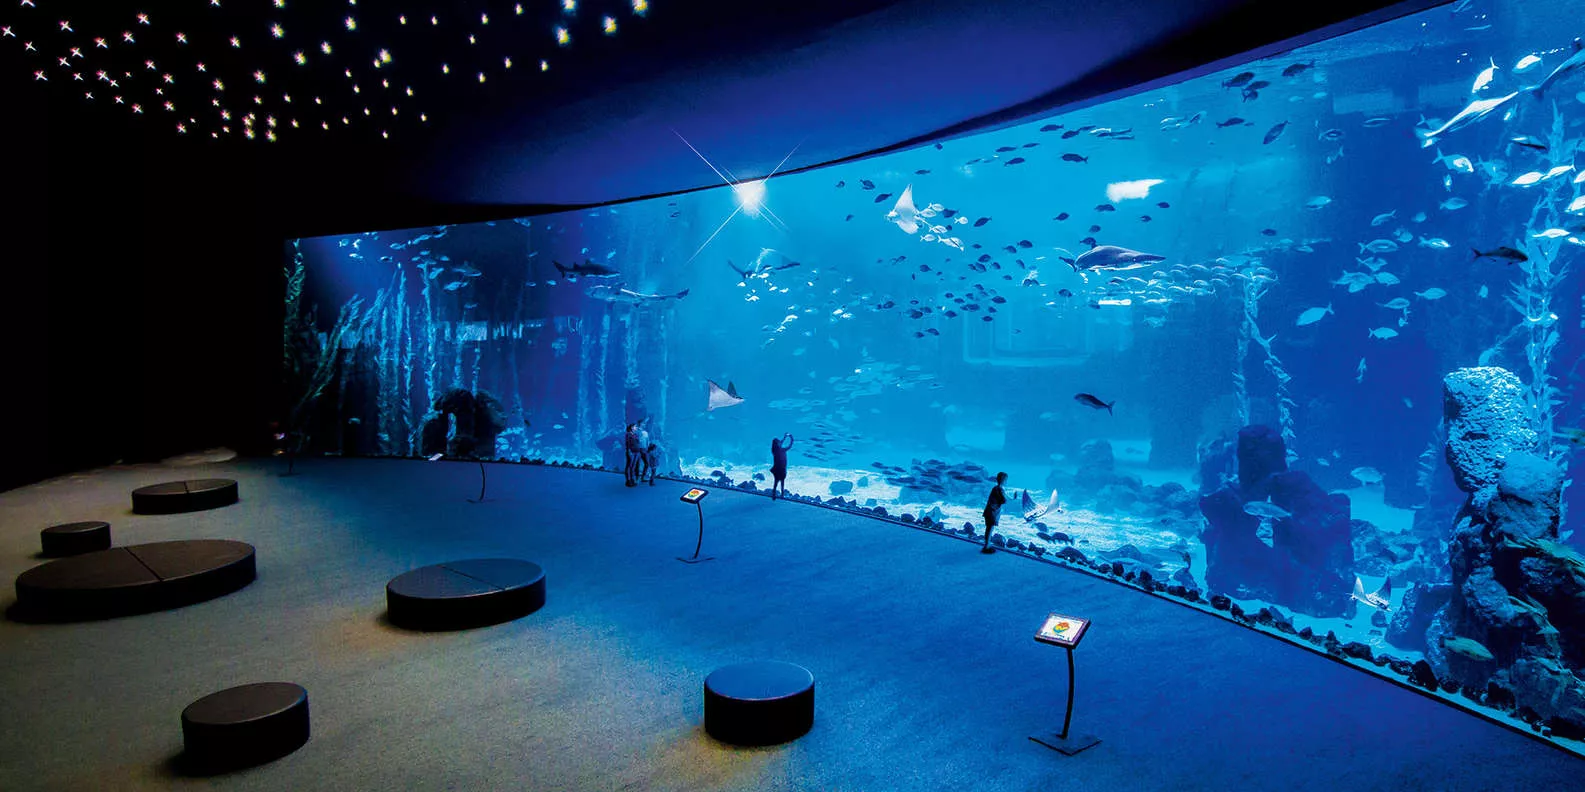 Poema Aquariums in Spain, Europe | Aquariums & Oceanariums - Rated 4.4